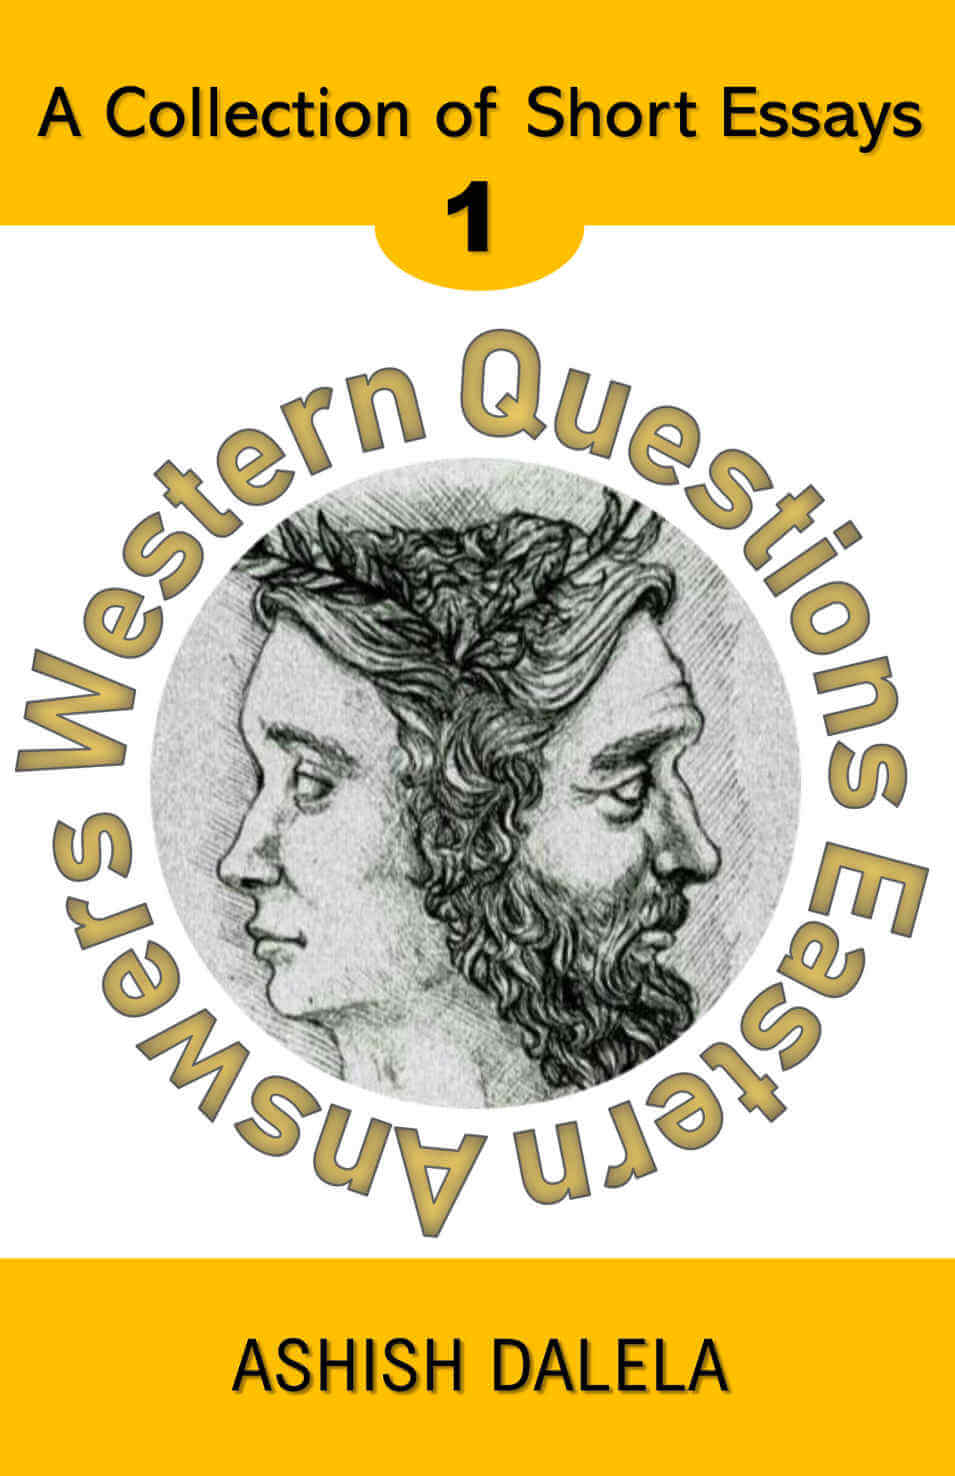 Westliche Fragen, östliche Antworten: Eine Sammlung kurzer Essays - Band 1